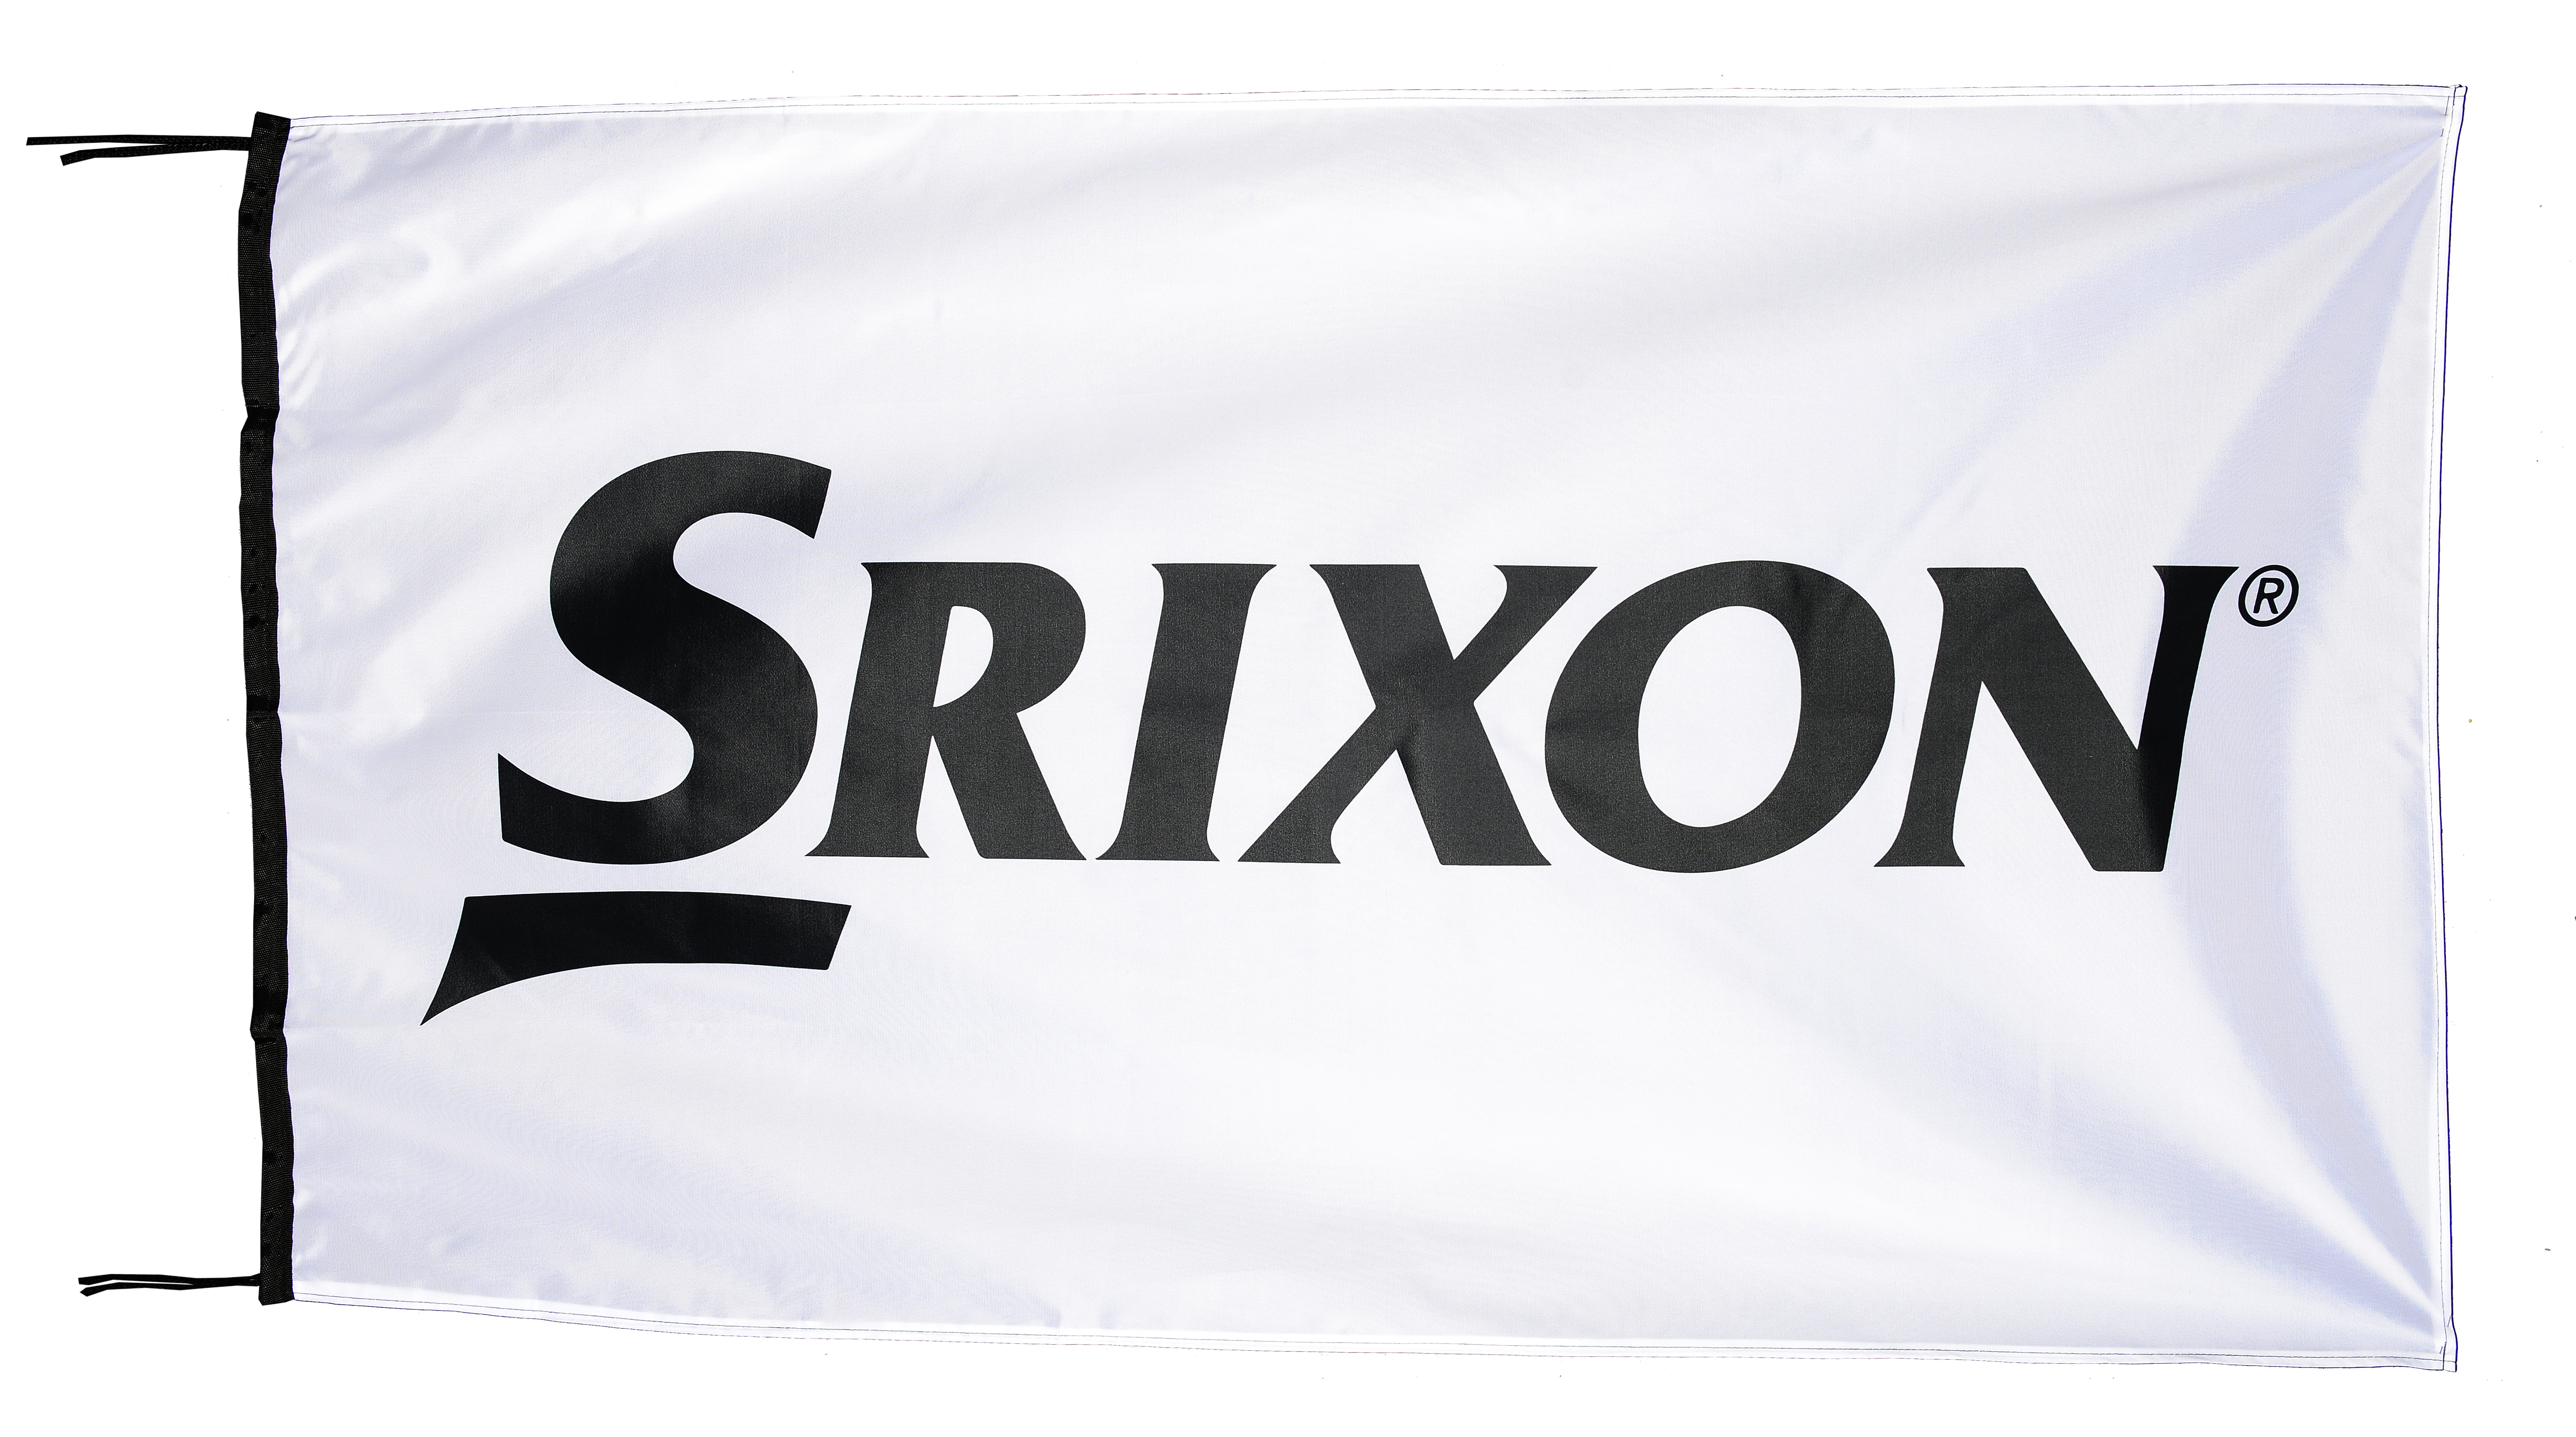 Flag  Srixon Golf White Landscape Flag / Banner 5 X 3 Ft (150 x 90 cm)  Golf Flags